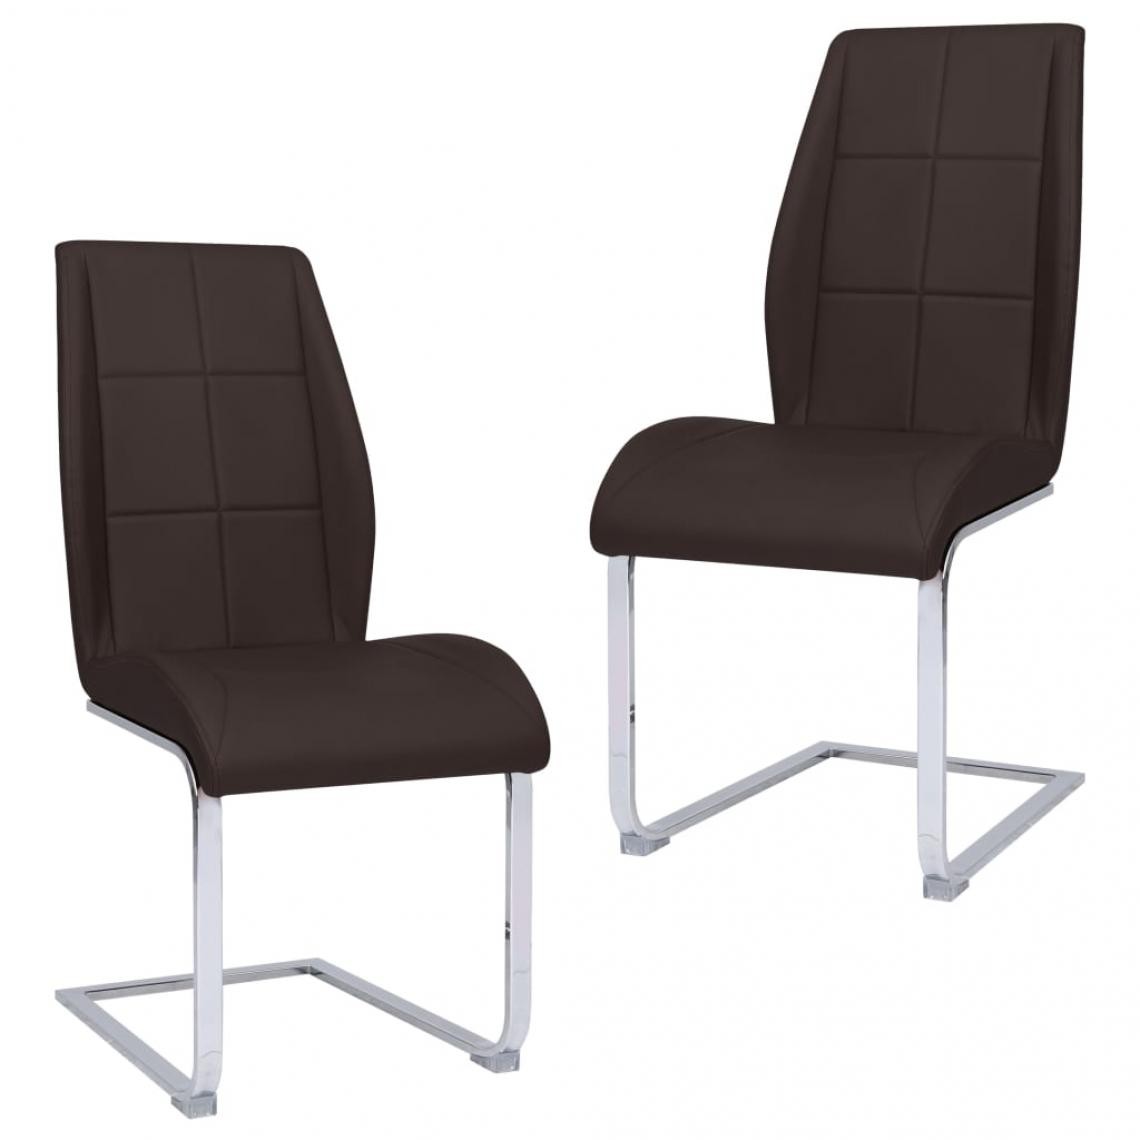 Decoshop26 - Lot de 2 chaises de salle à manger cuisine cantilever design intemporel tissu marron CDS020366 - Chaises